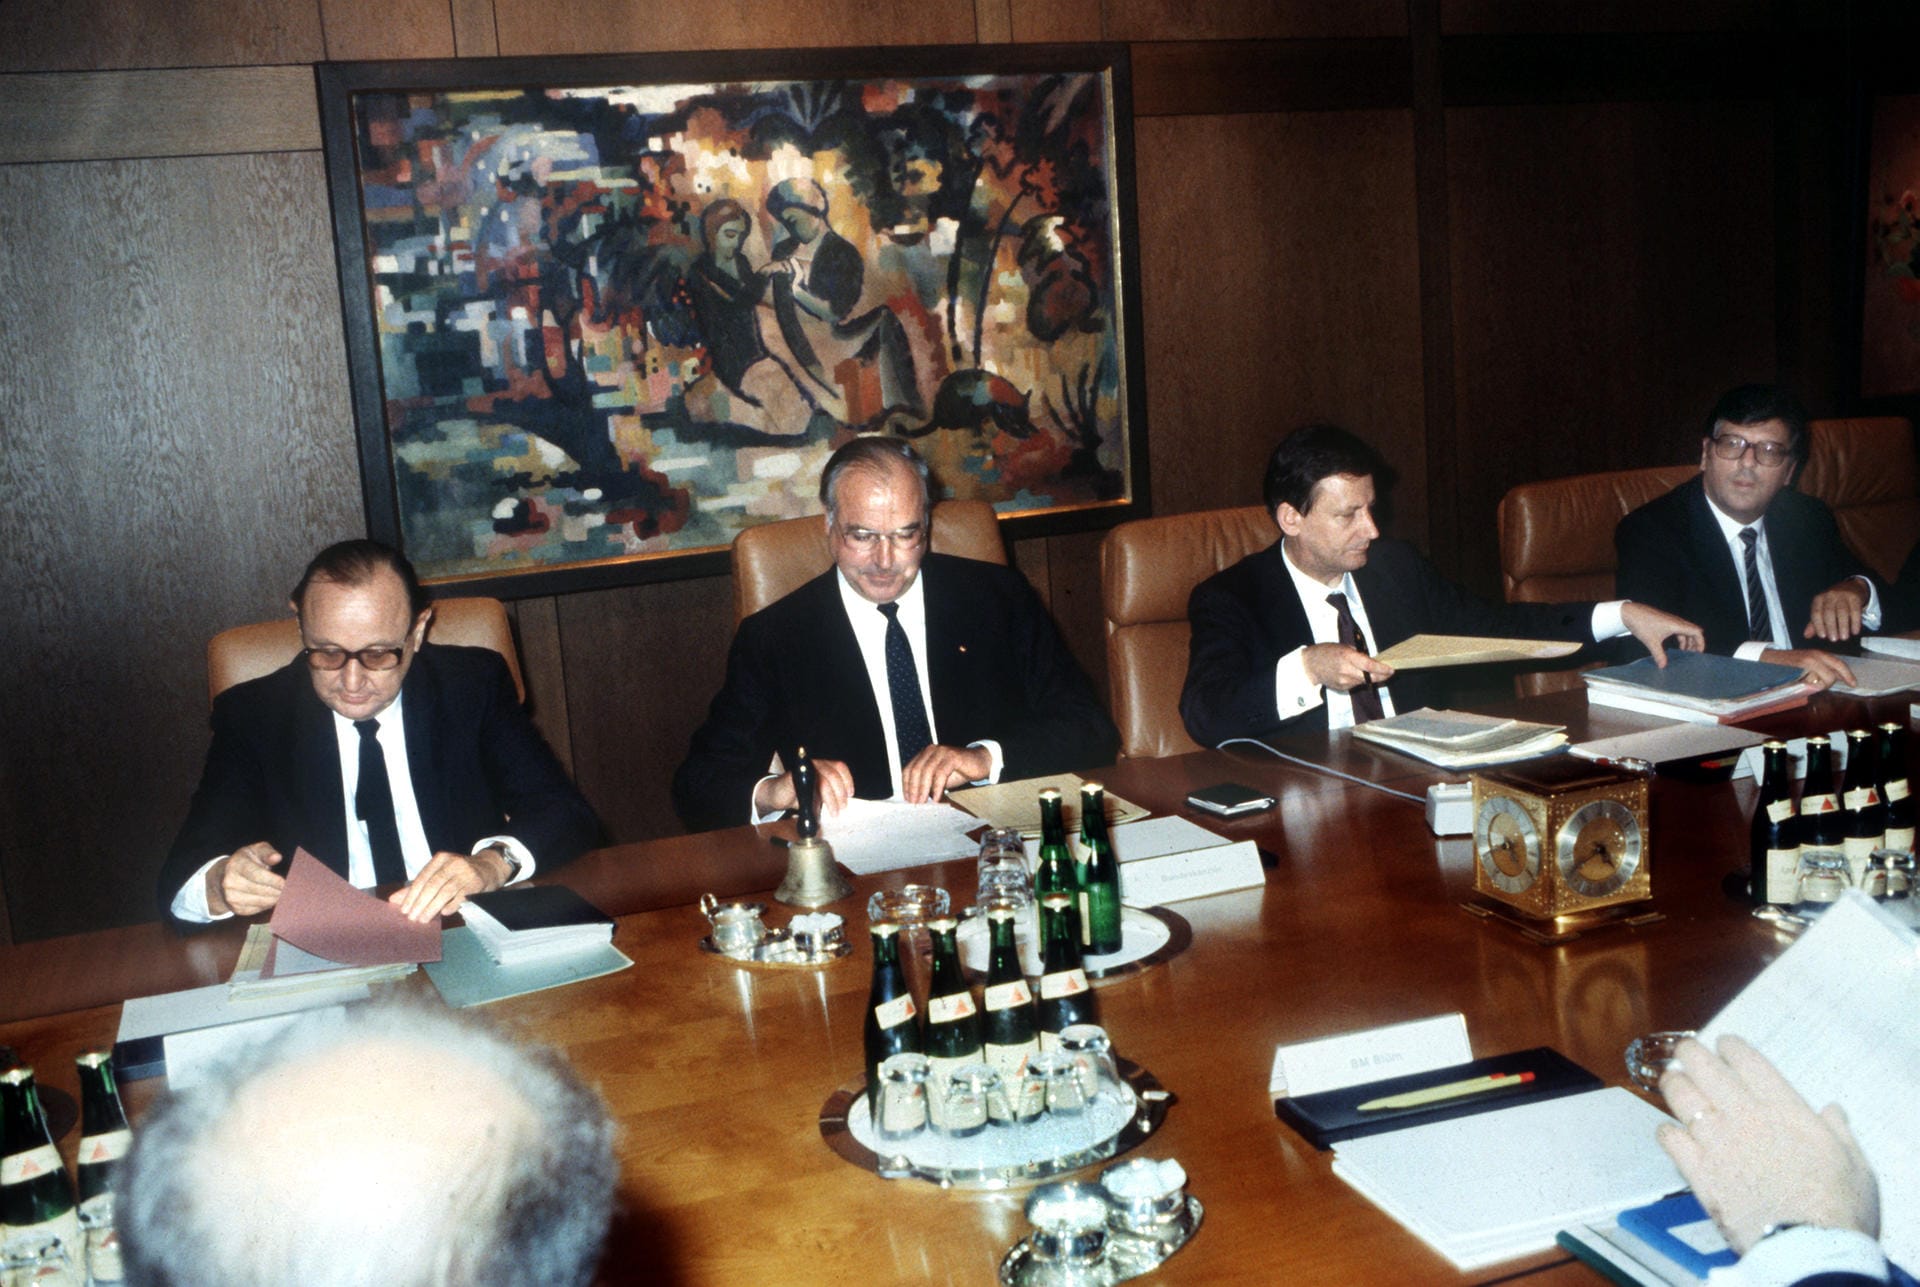 Am 4. Oktober 1982 trat das neue Kabinett unter Bundeskanzler Helmut Kohl (2. v.l.) in Bonn zum ersten Mal zusammen. Links neben ihm der Bundesaußenminister und Vizekanzler Hans-Dietrich Genscher.